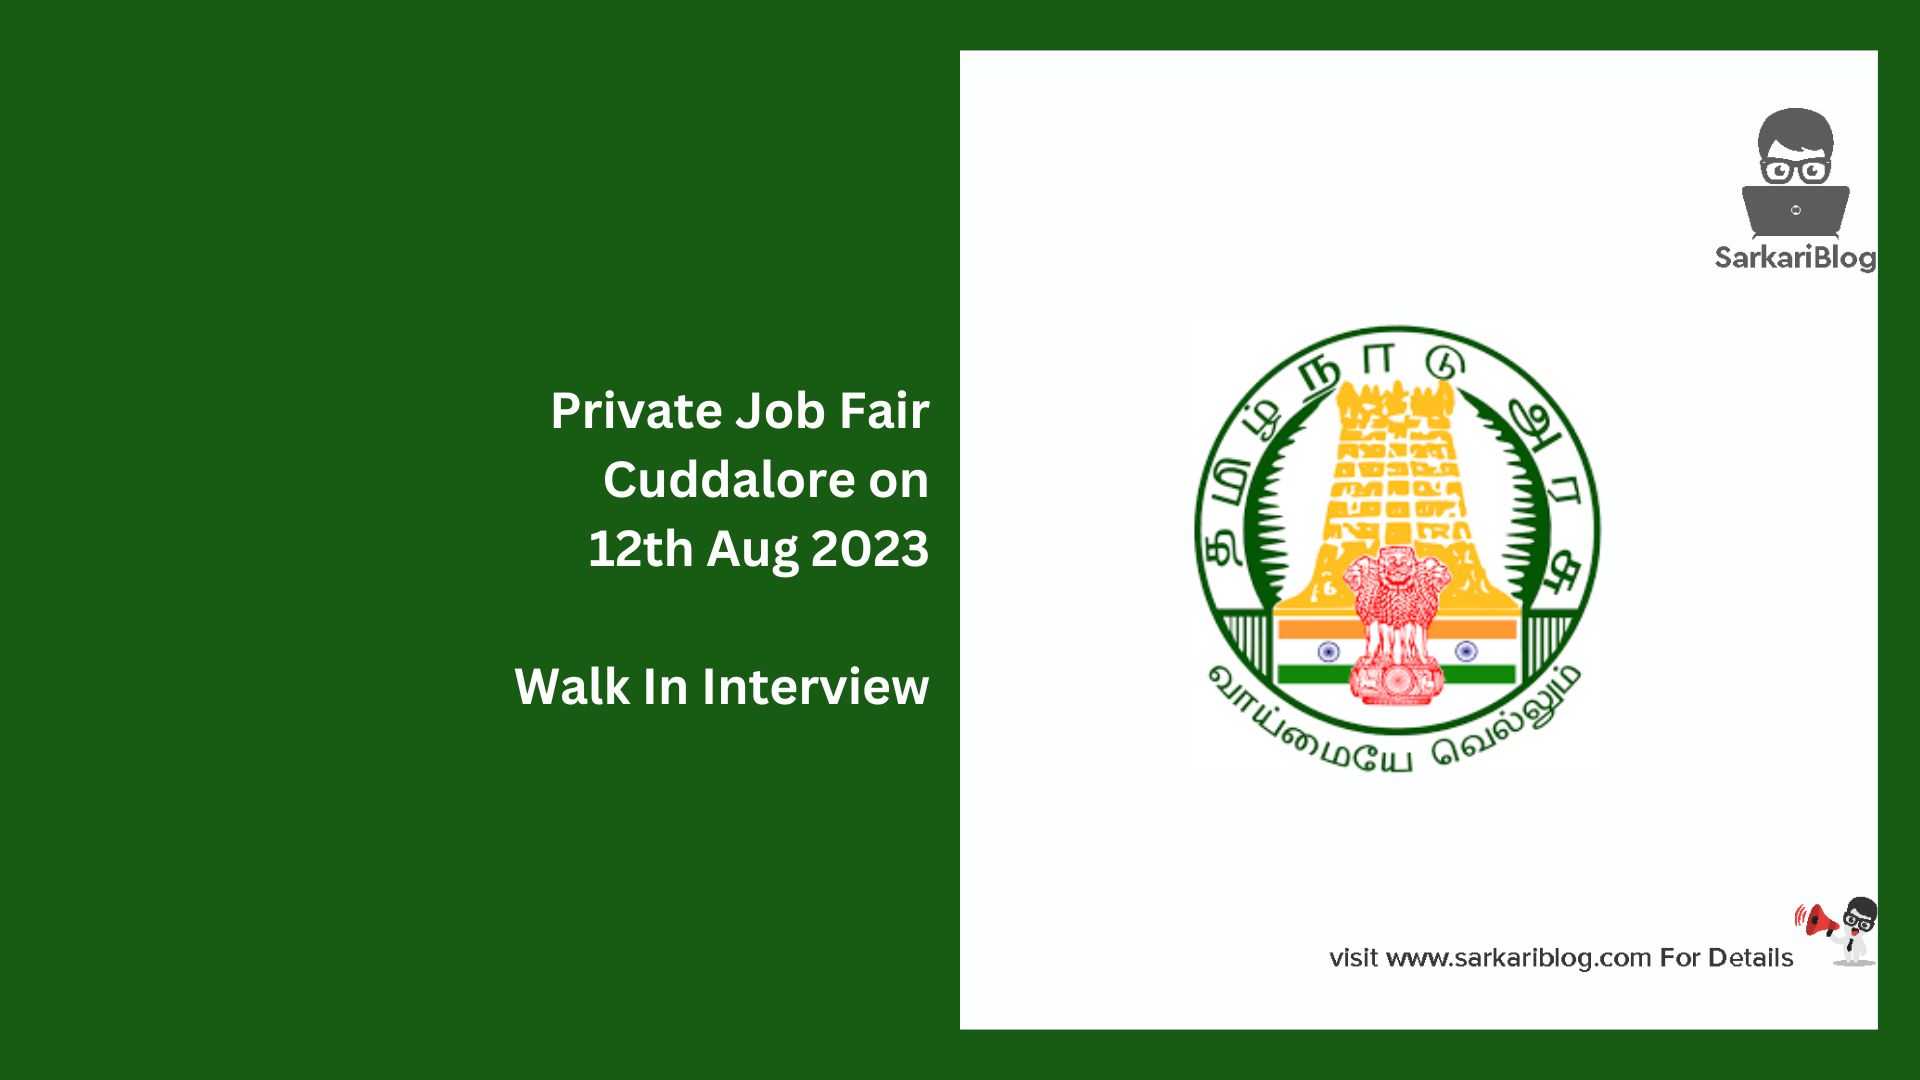 Private Job Fair Cuddalore on 12th Aug 2023